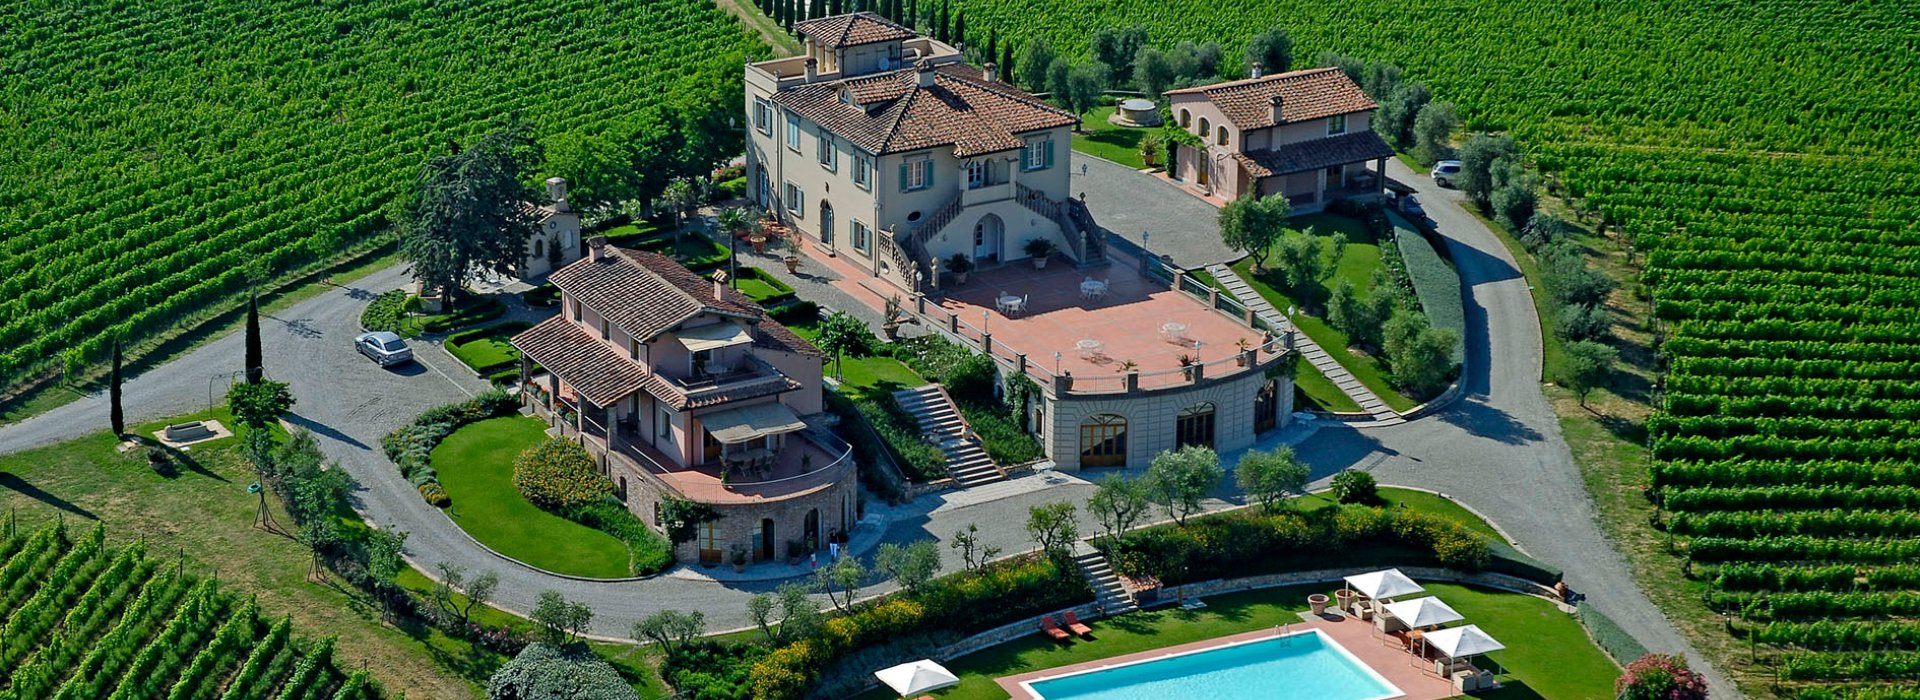 Vacanza in Toscana per la primavera 2023 a Poggio al casone resort, agriturismo di charme nella campagna pisana